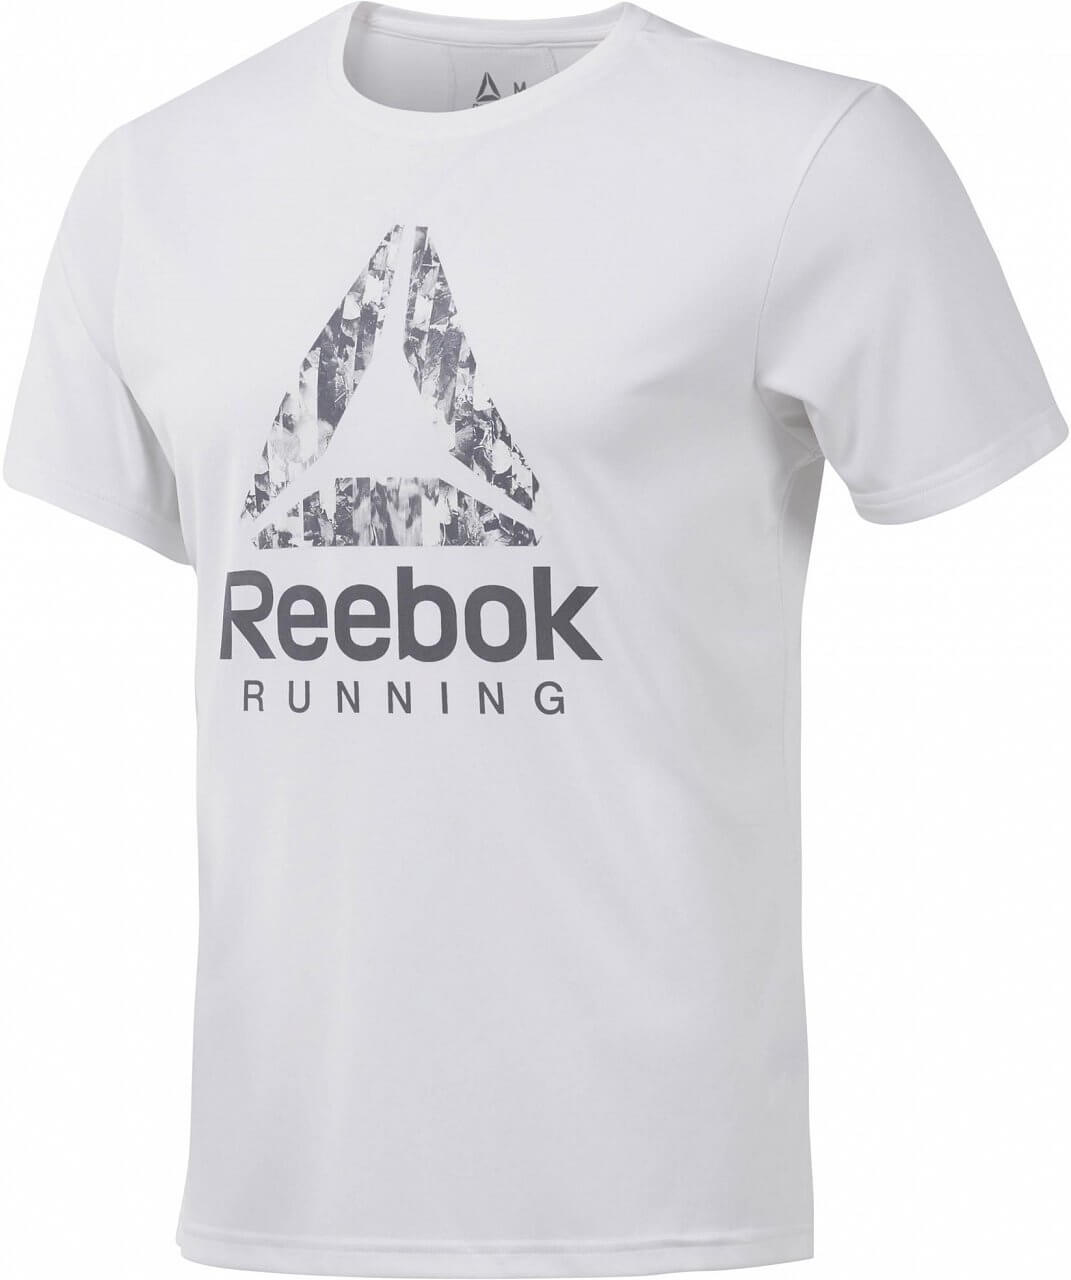 Pánské běžecké tričko Reebok Running Graphic Tee